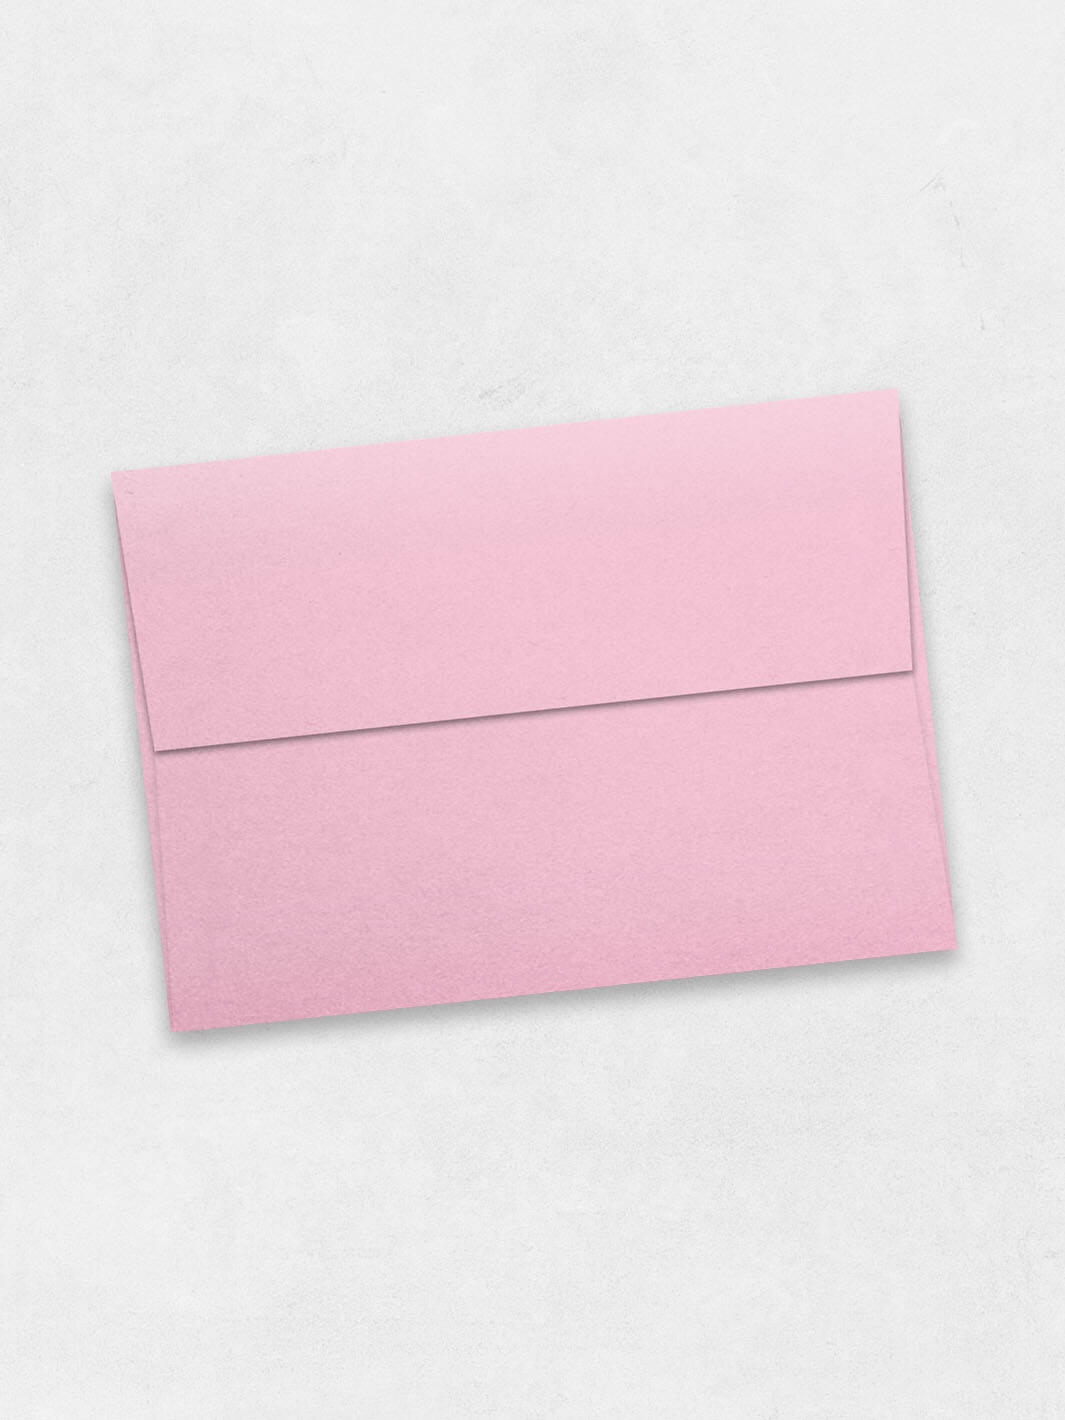 rose quartz metallic a4 envelope